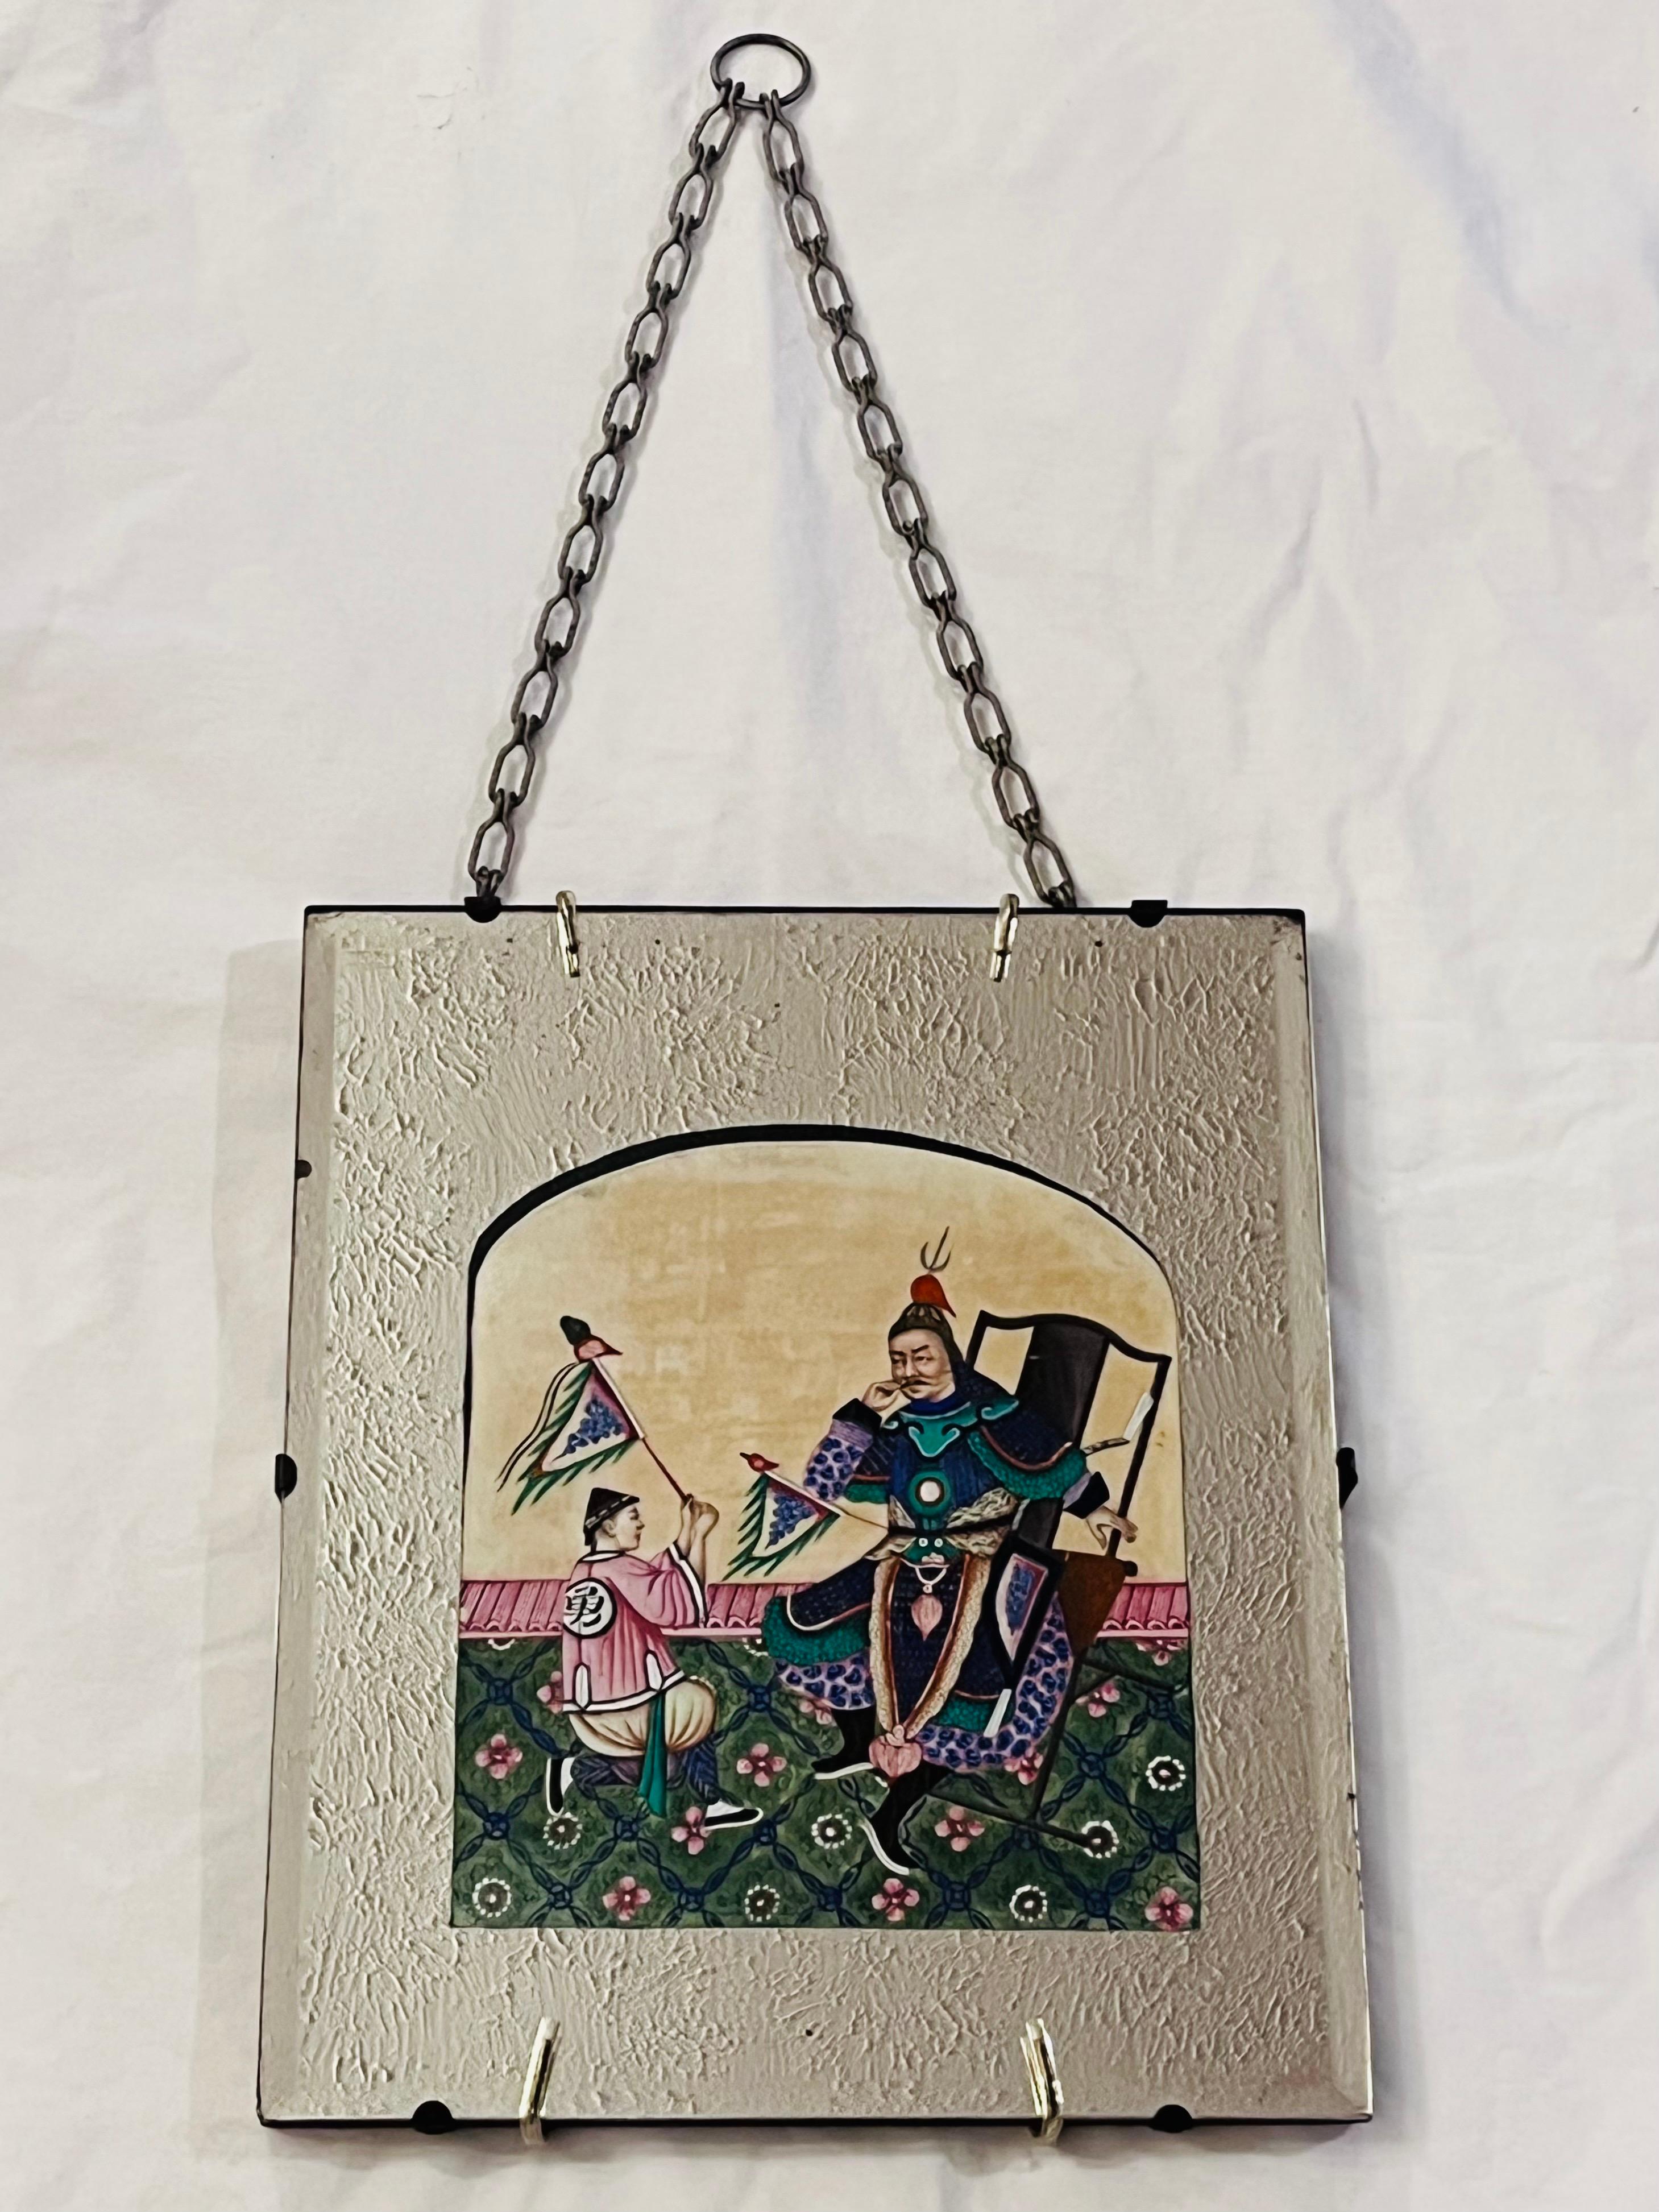 Peinture à la moelle en papier de riz d'exportation chinoise du milieu du 19e siècle, datant de 1850, située dans un miroir arqué et découpé qui est suspendu au mur par une chaîne. La peinture représente un guerrier chinois assis sur une chaise